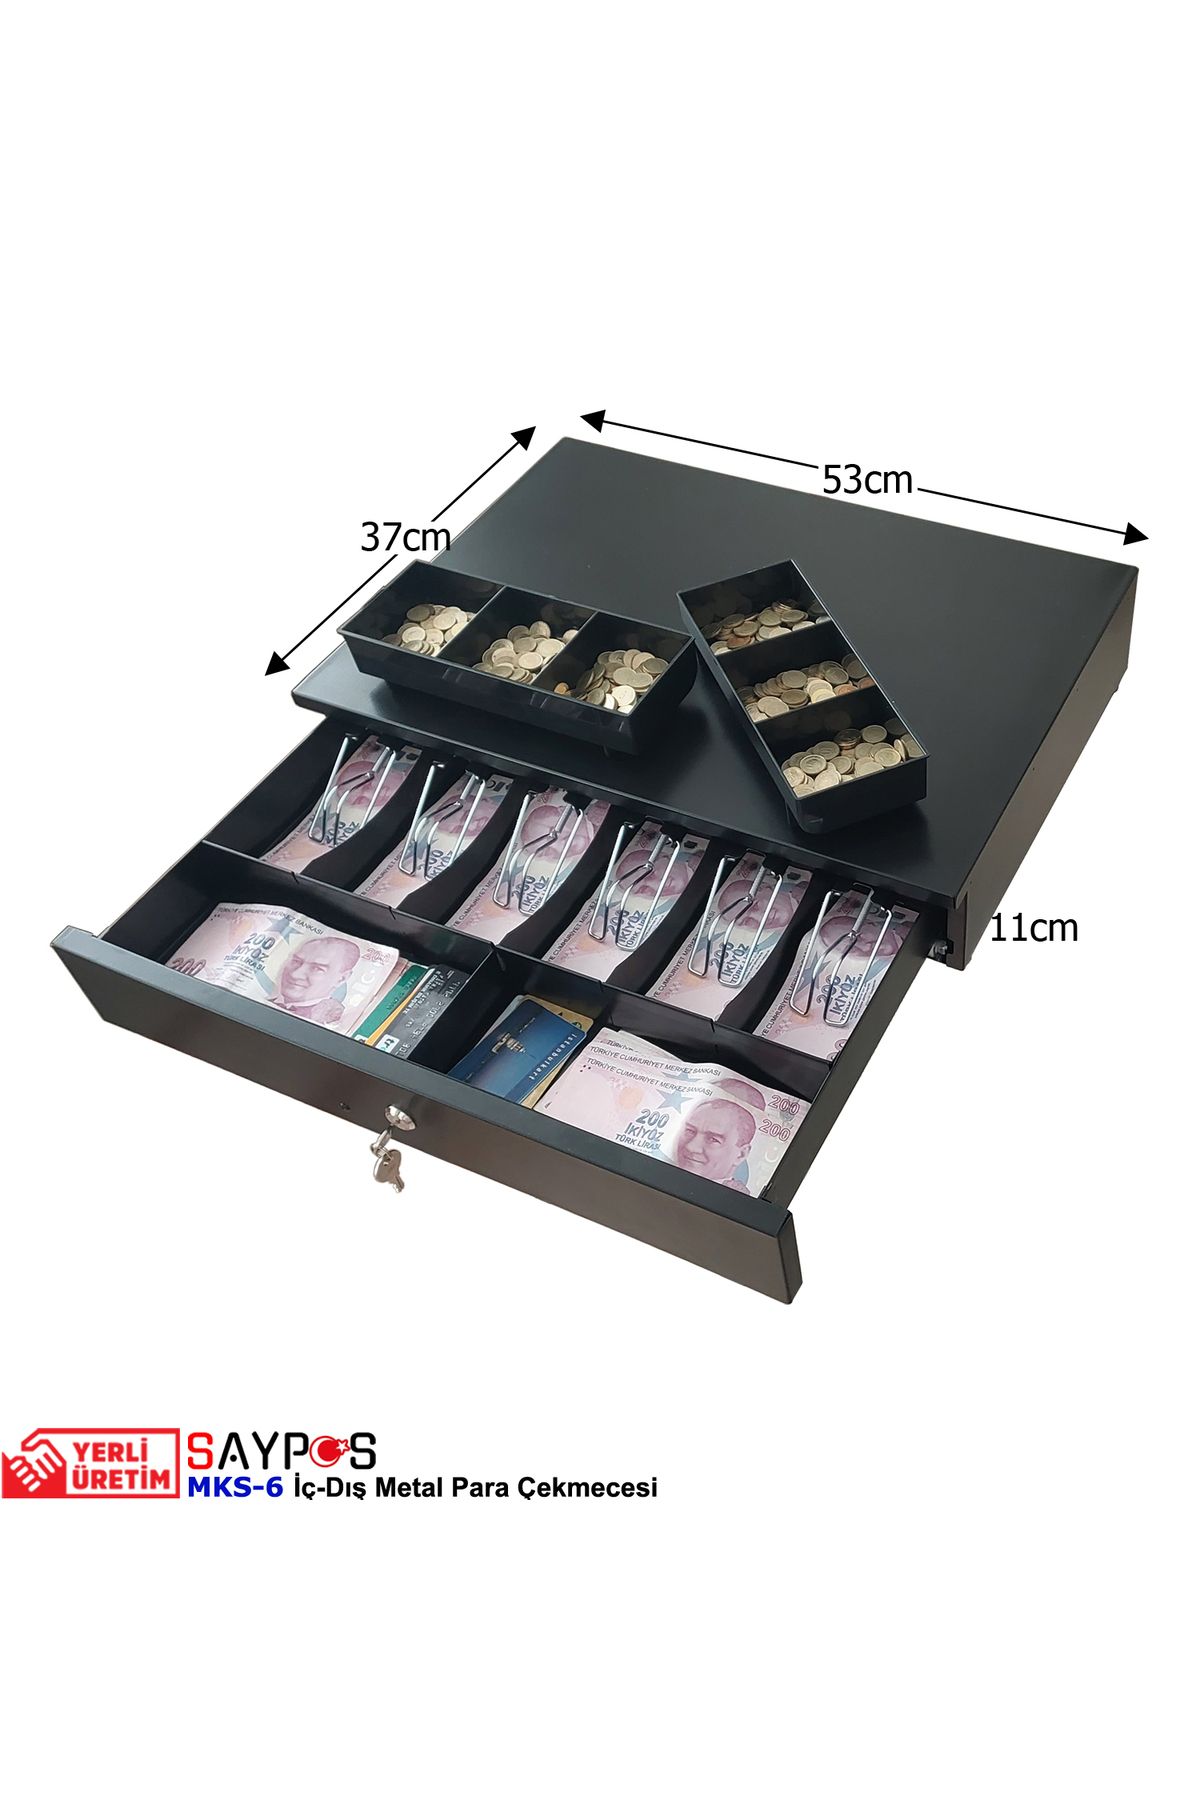 SAYPOS 6 Banknot Gözlü Iç-dış Full Metal Kırılmaz Para Çekmecesi Anahtardan Otomatik Açılır 53x37x11cm